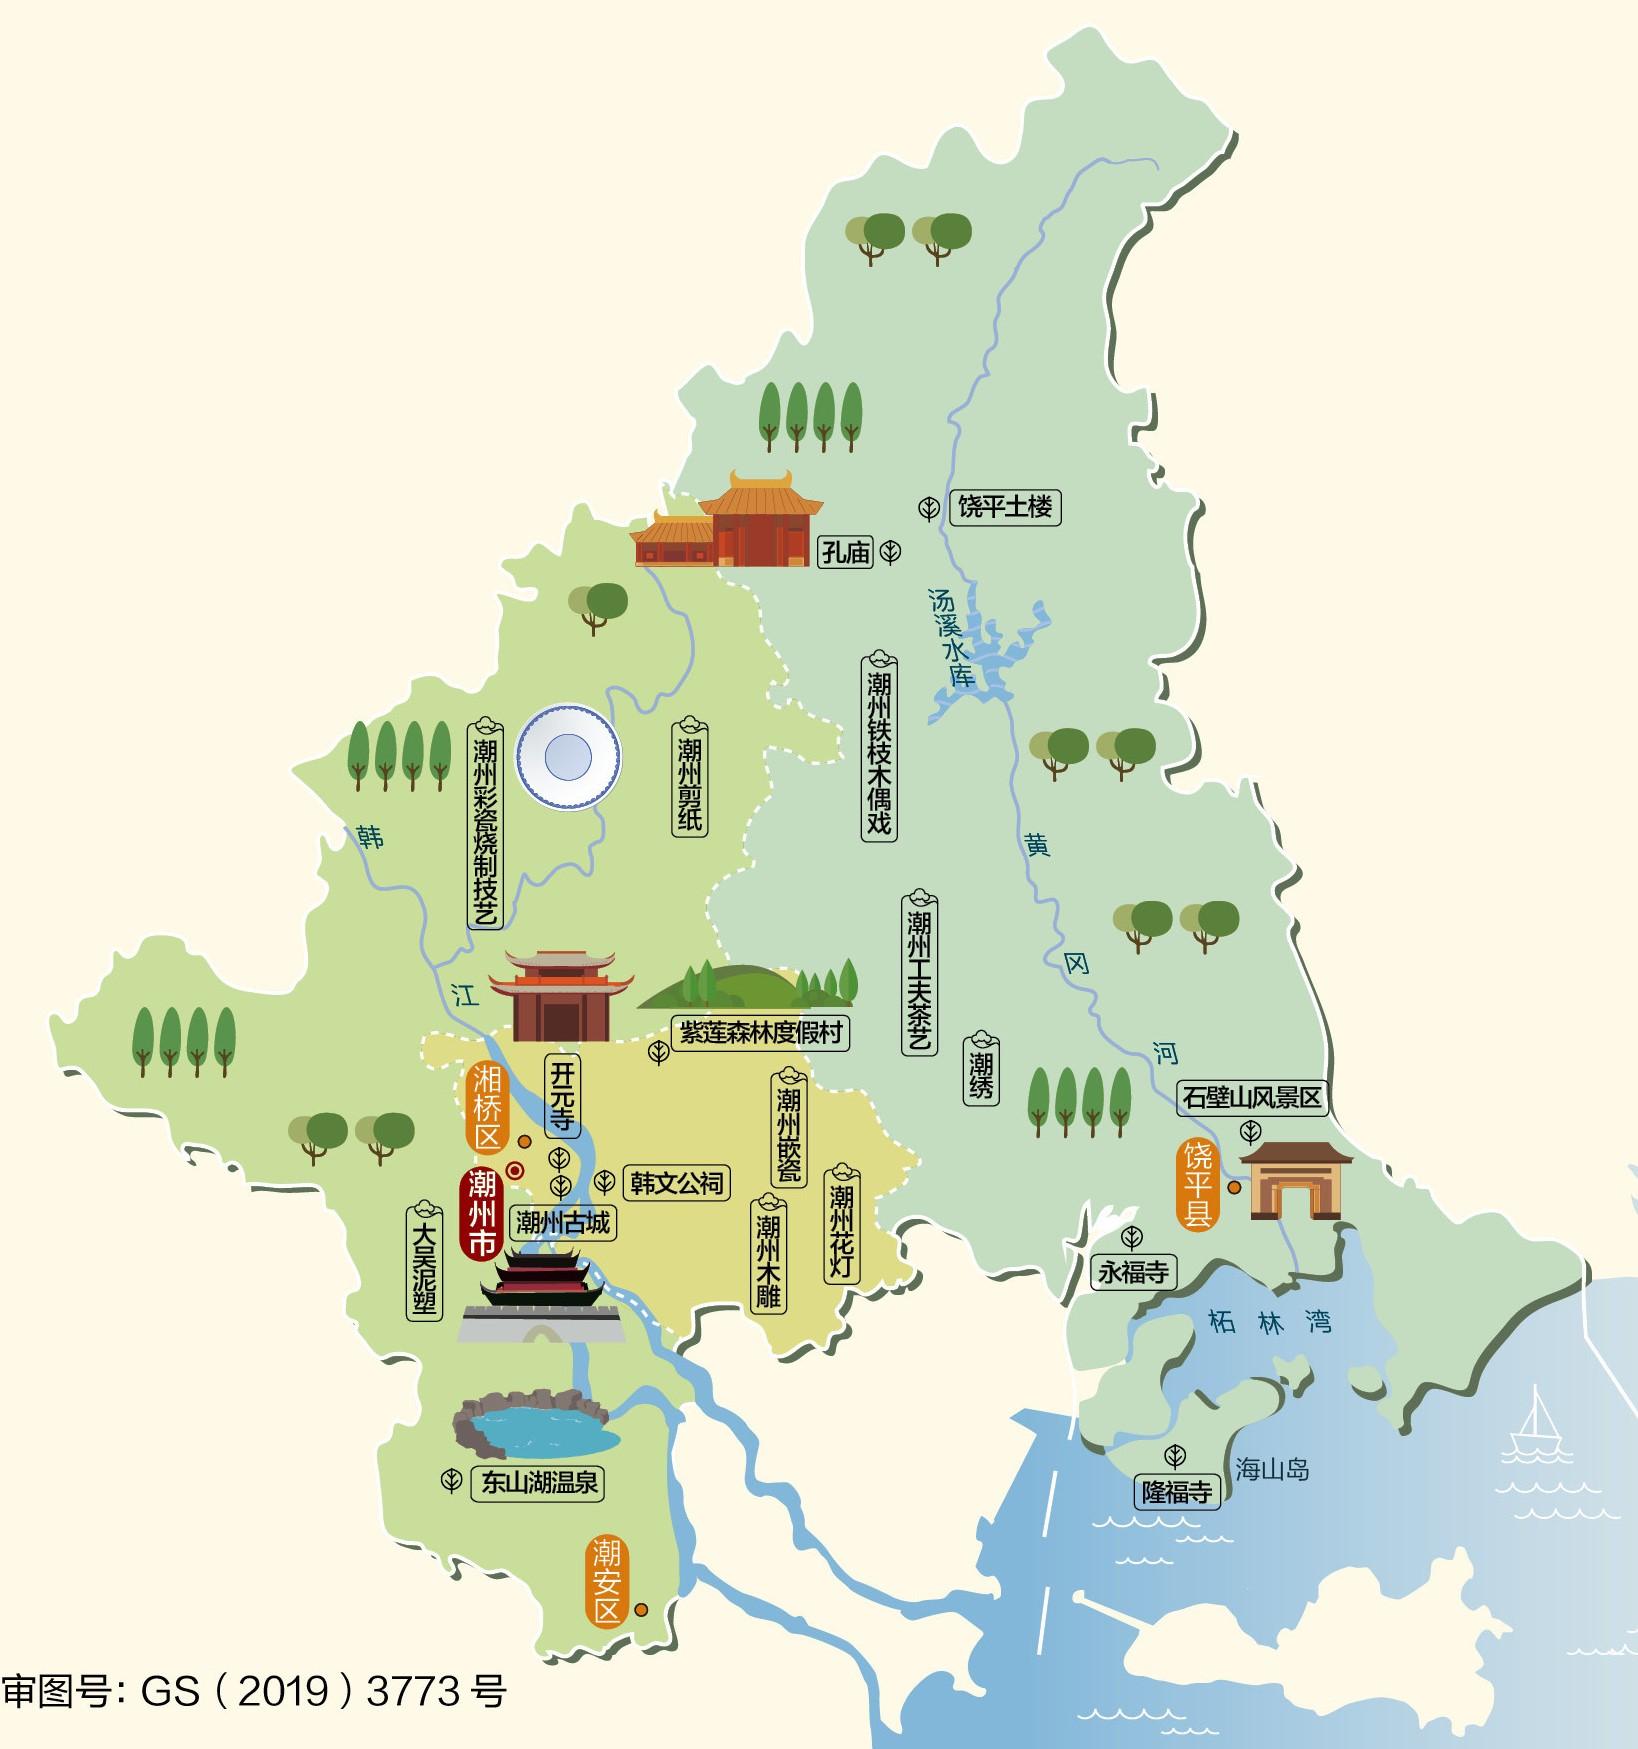 14,潮州市人文地图和情况介绍